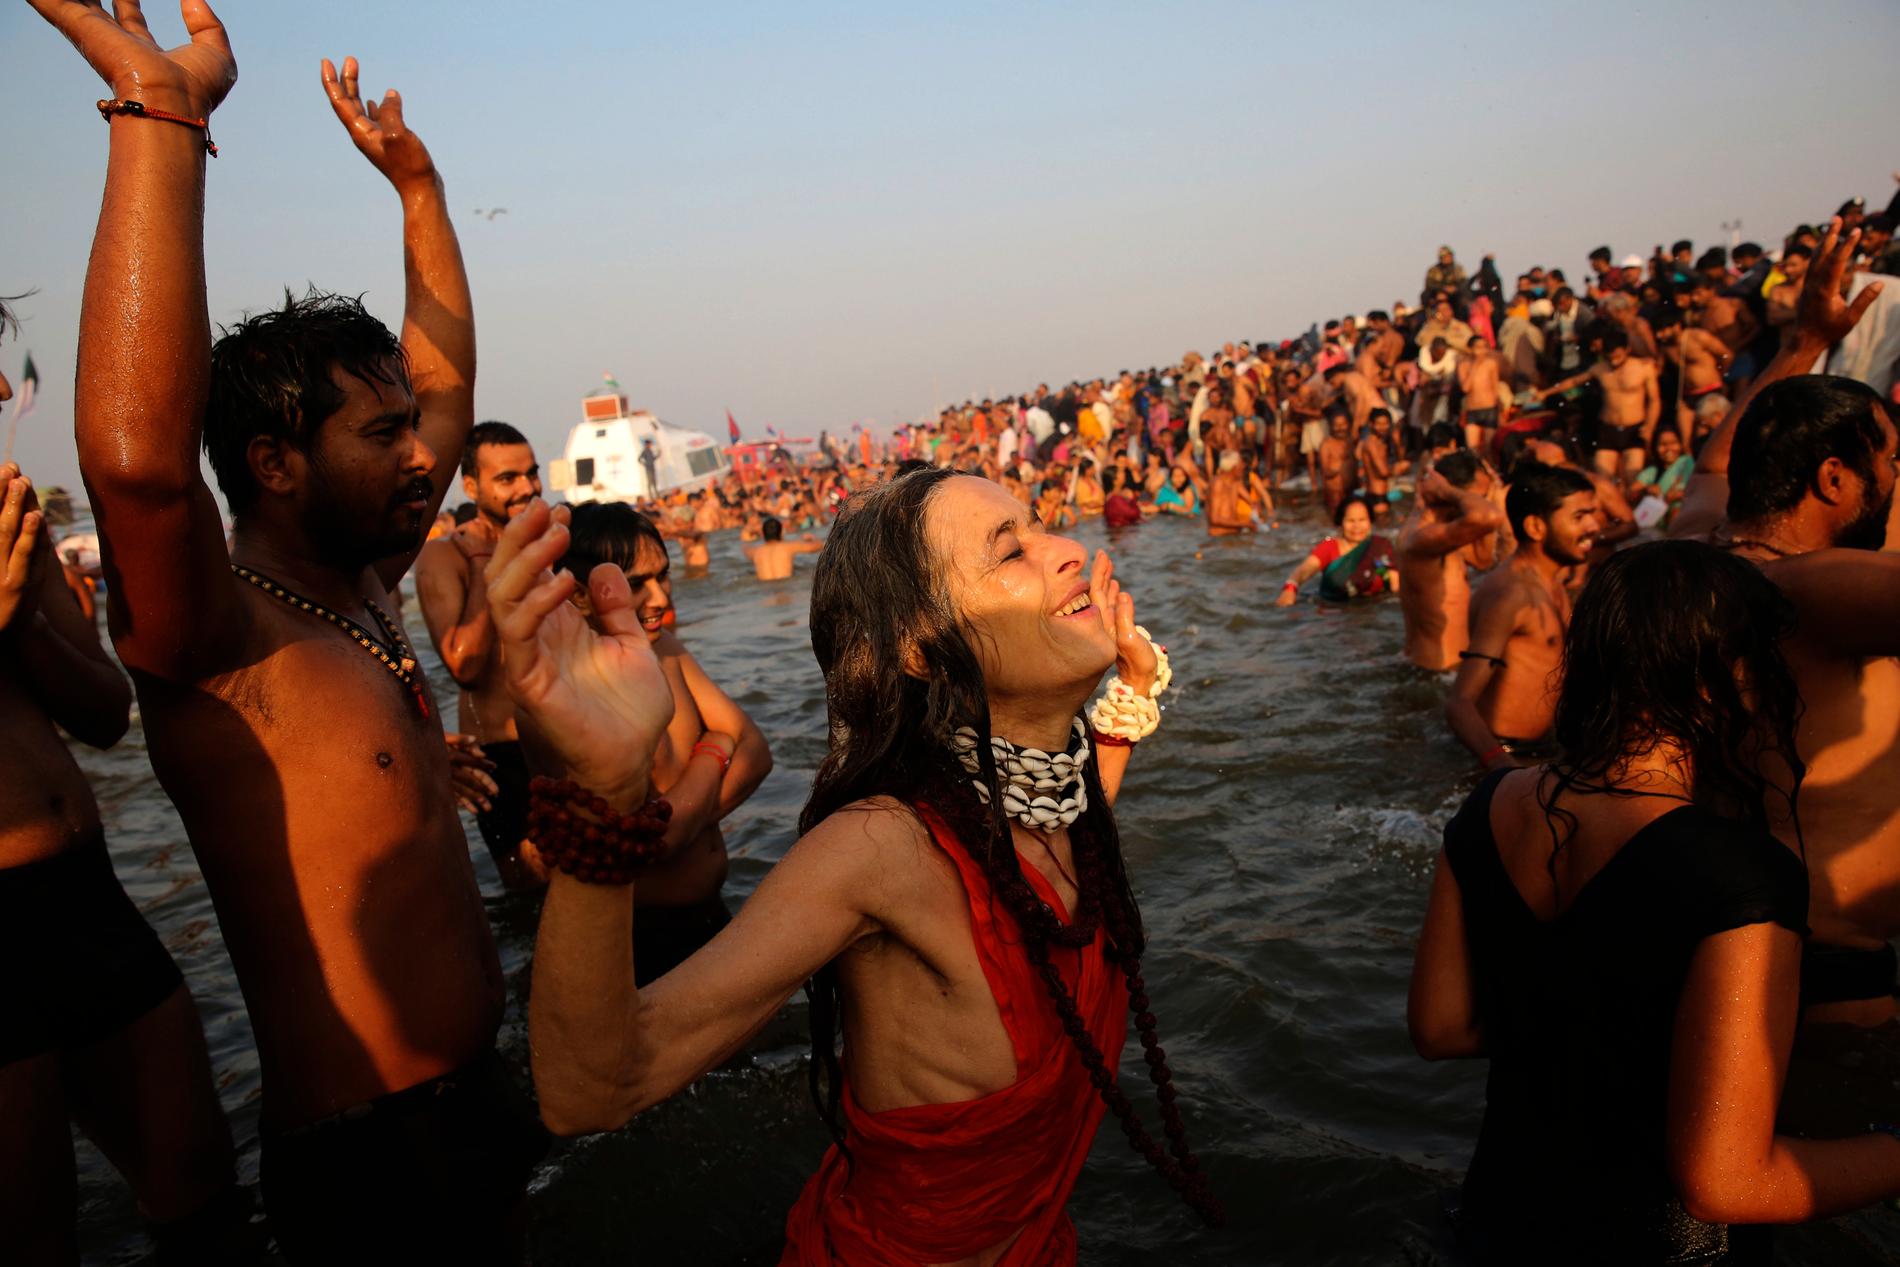 Den religiösa högtiden kumbh mela, då miljontals pilgrimer badar i främst den heliga floden Ganges, pågår i den indiska delstaten Uttar Pradesh.